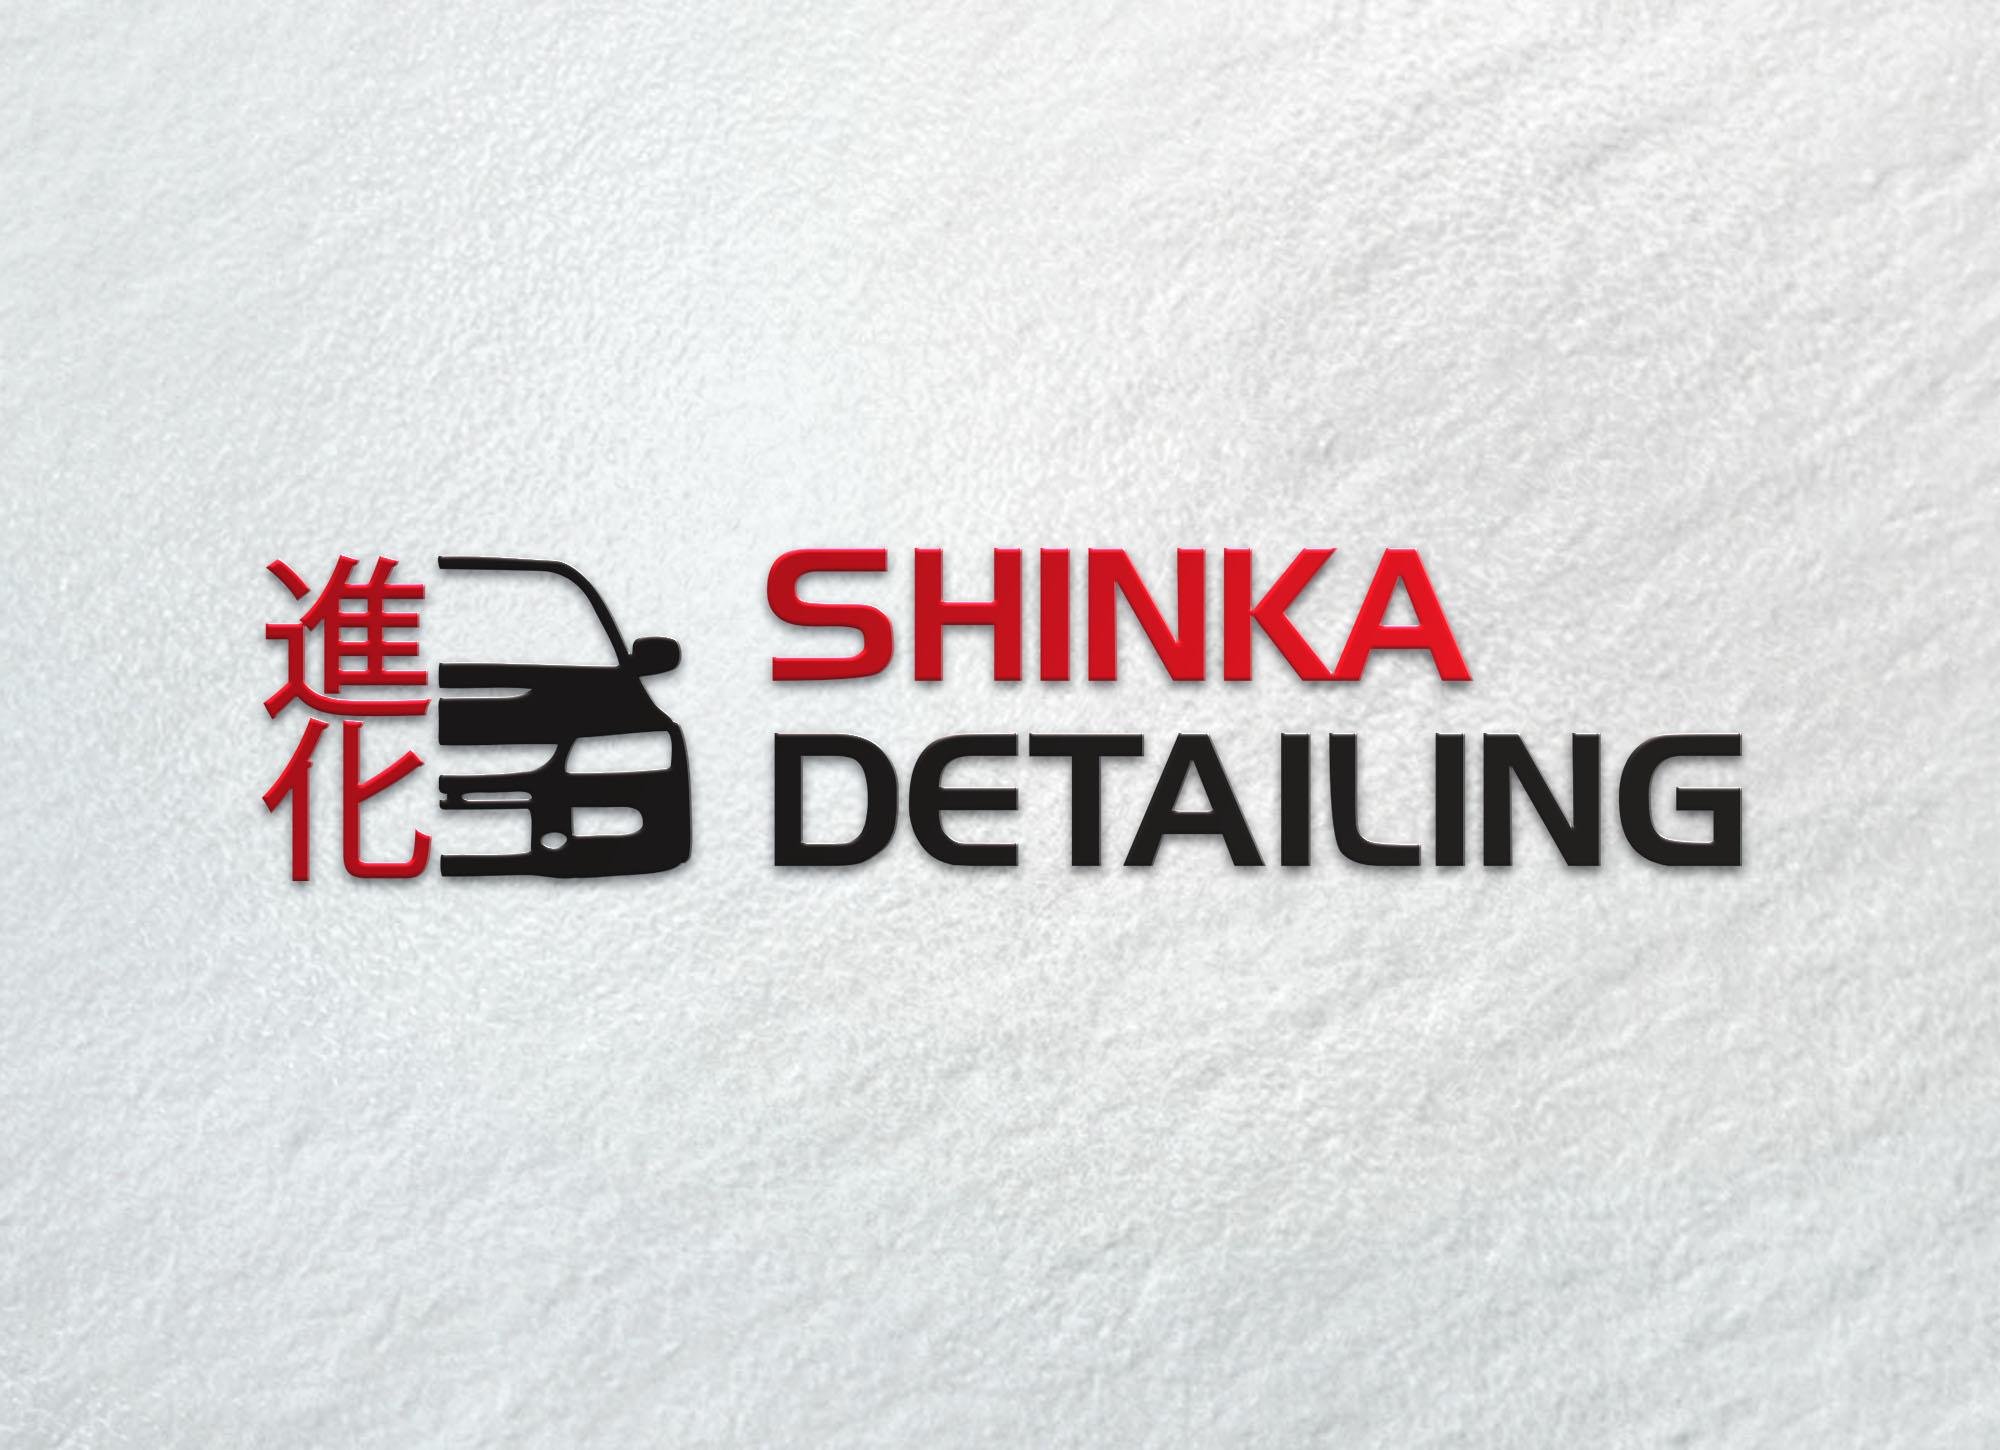 Shinka detailing